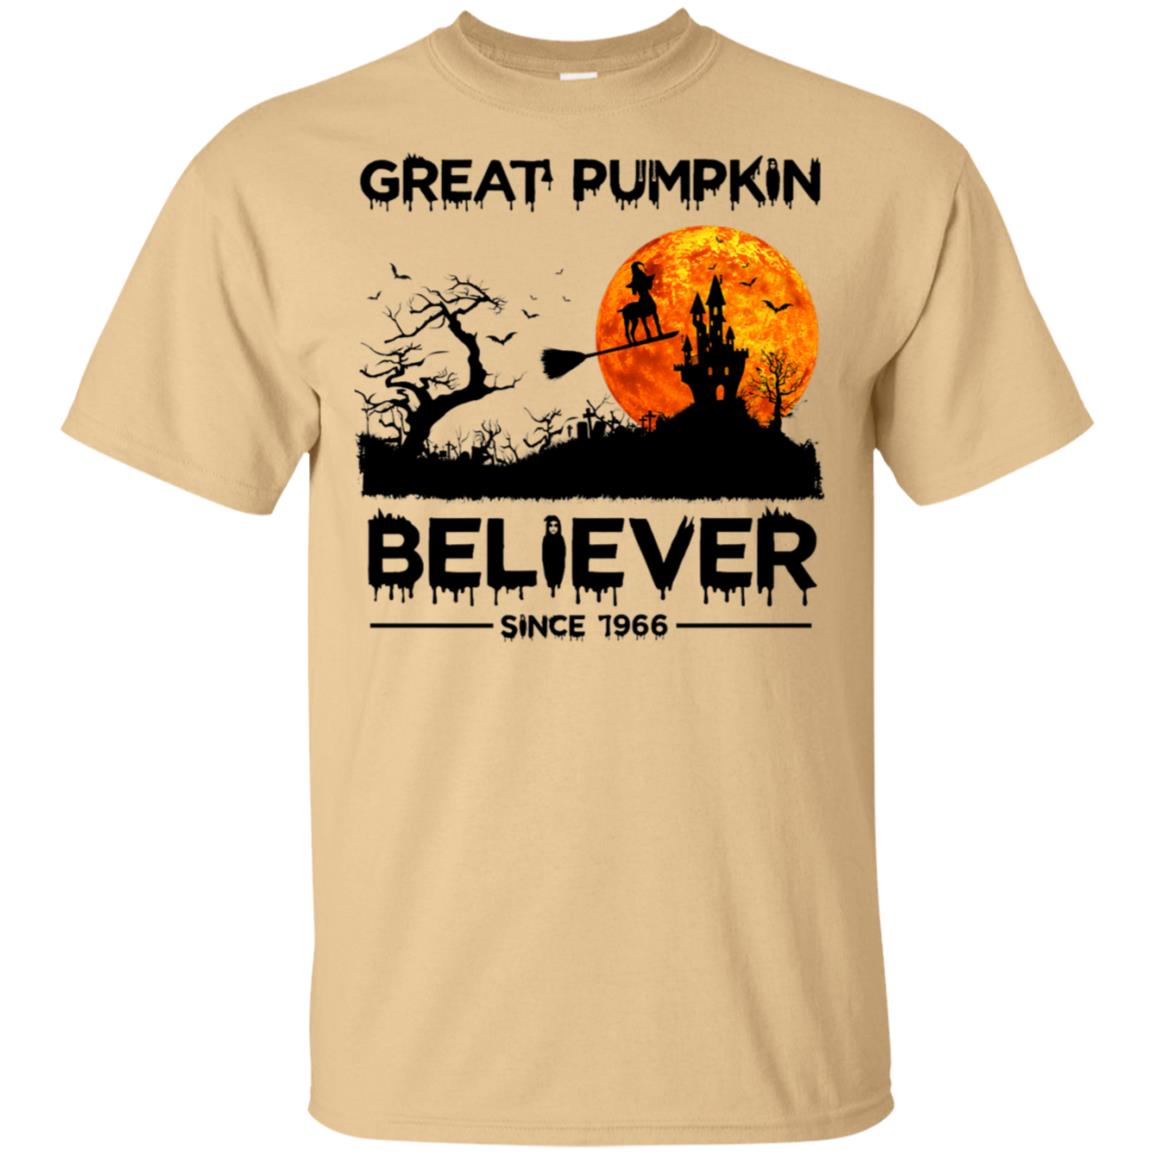 Great Pumpkin Believer Since 1966 Funny Dog Halloween Shirt